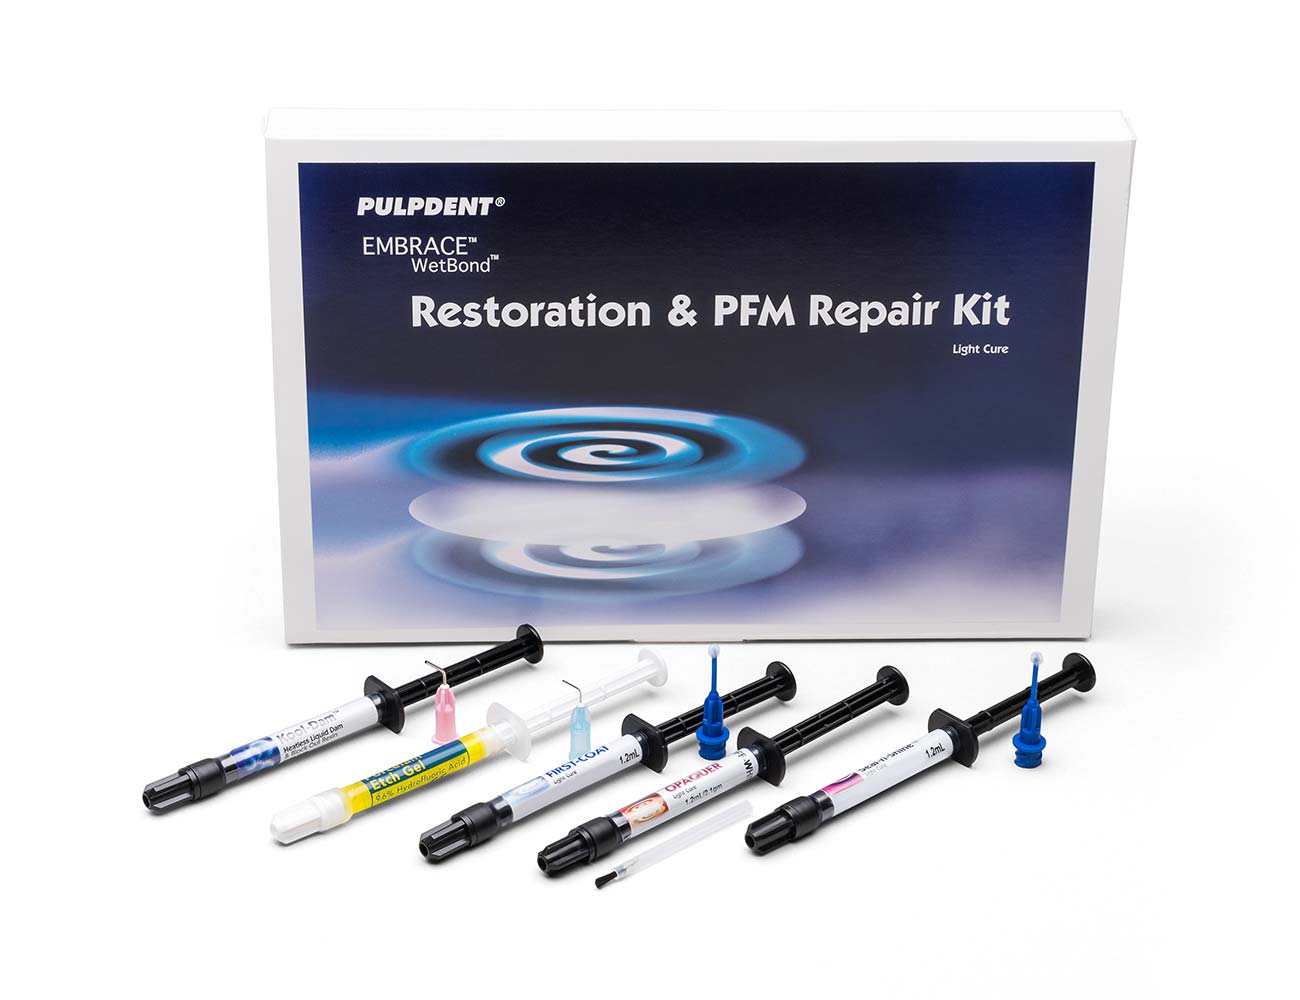 Applicator Tip for PFM Repair Kit